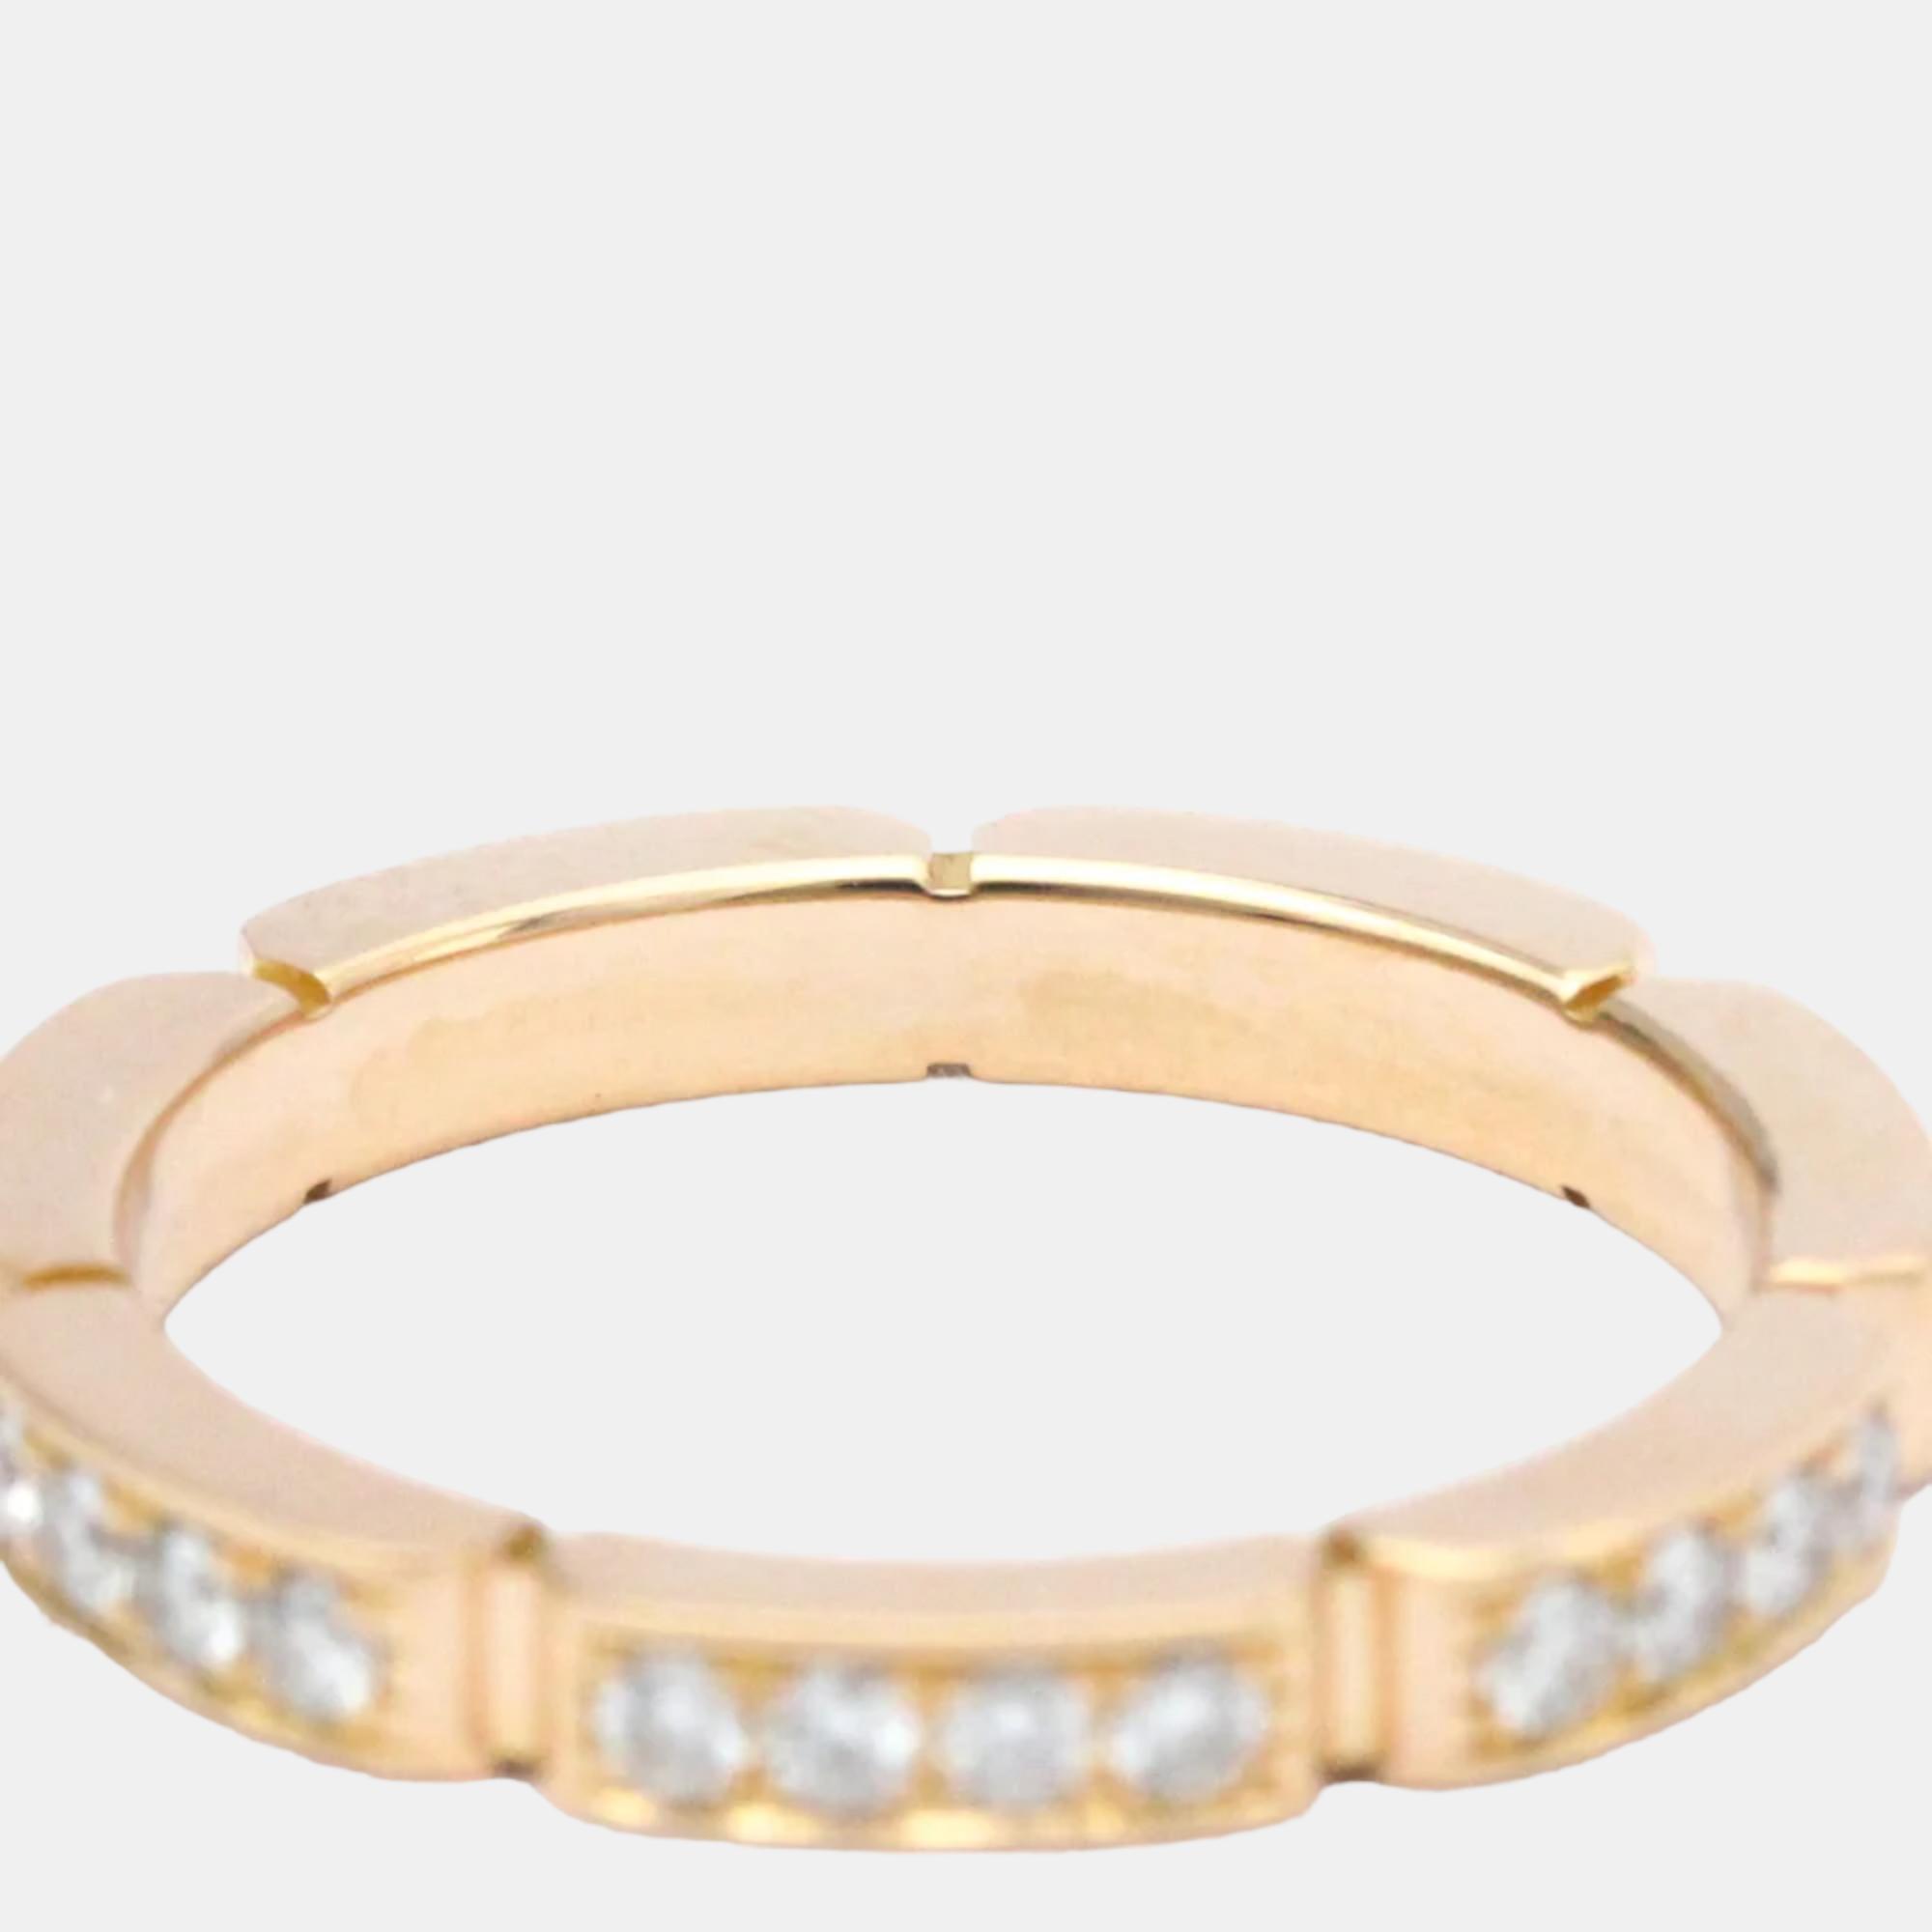 Cartier Maillon Panthere 18K Rose Gold Diamond Ring EU 50